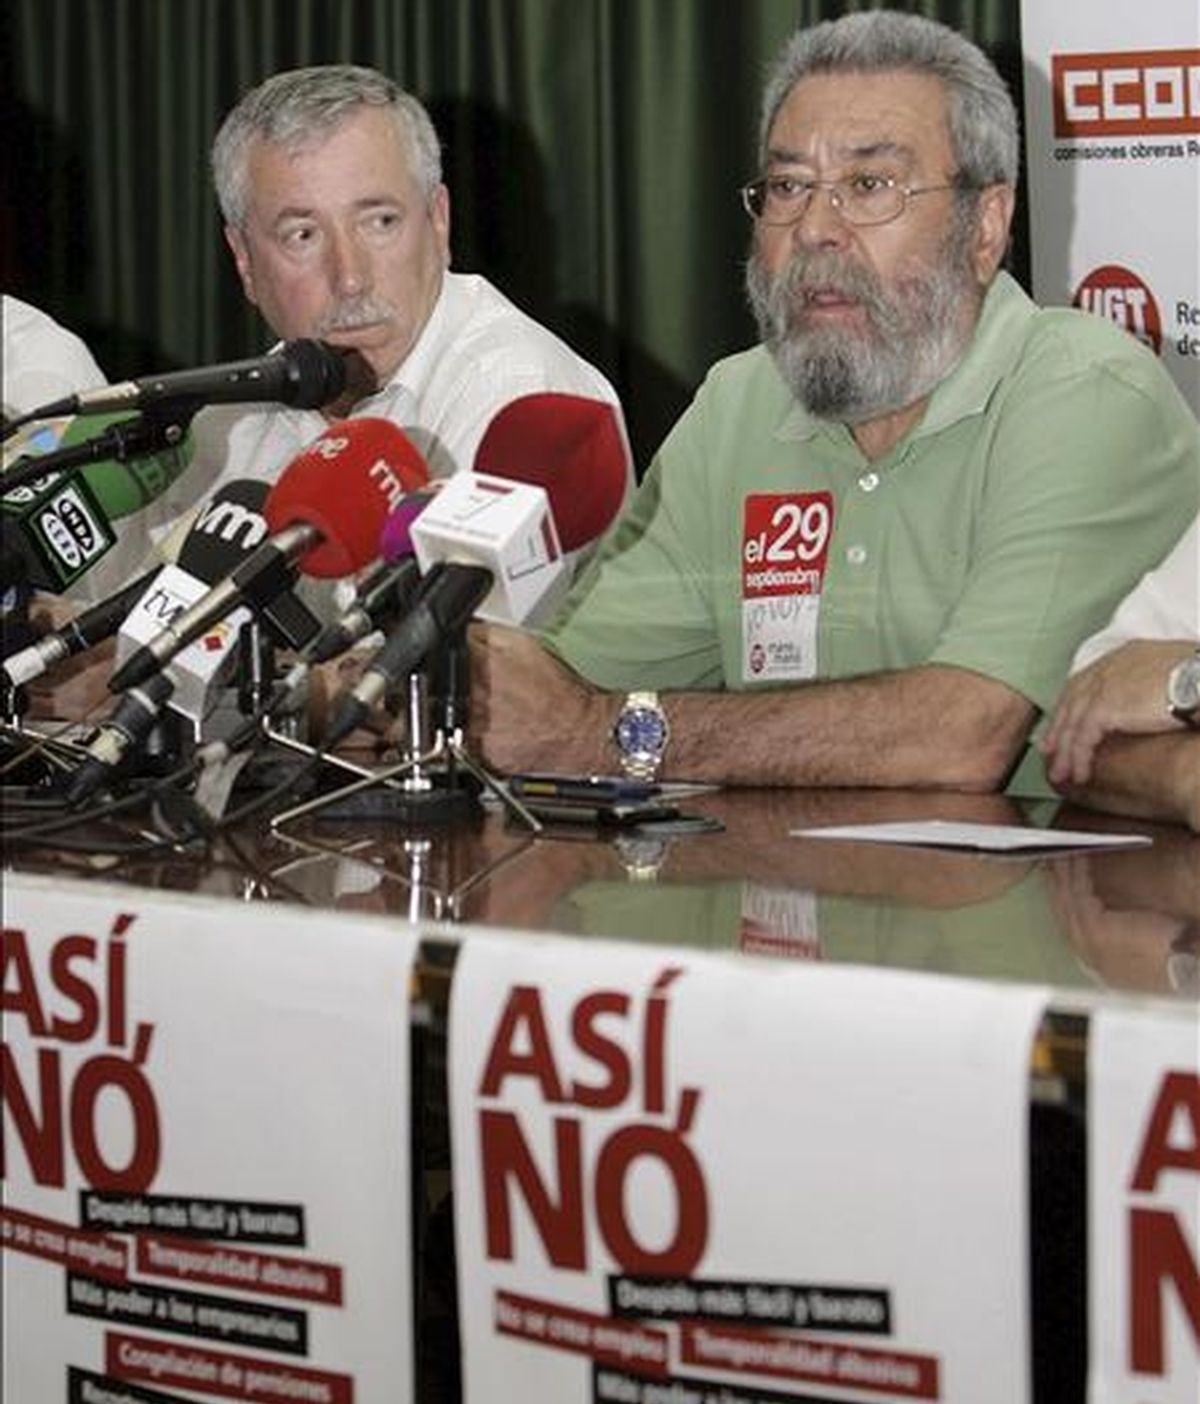 Los secretarios generales de UGT, Cándido Méndez (d), y CCOO, Ignacio Fernández Toxo (i), durante la asamblea de delegados sindicales celebrada hoy en Murcia, preparatoria de la huelga general del 29 de septiembre. EFE